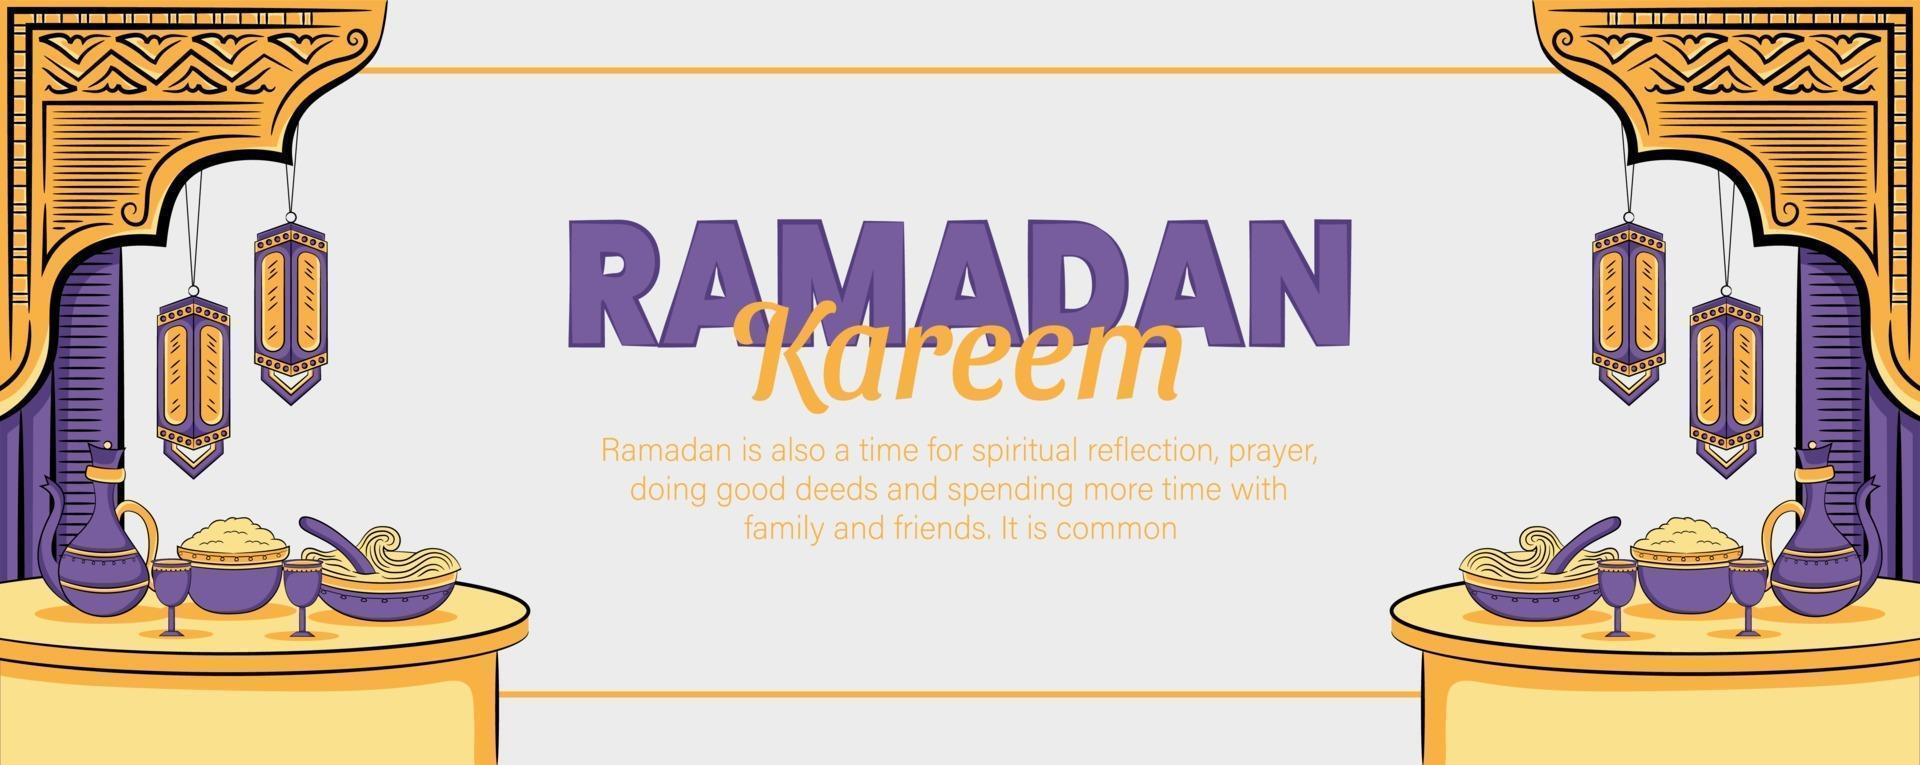 banner di ramadan kareem con illustrazione islamica disegnata a mano vettore